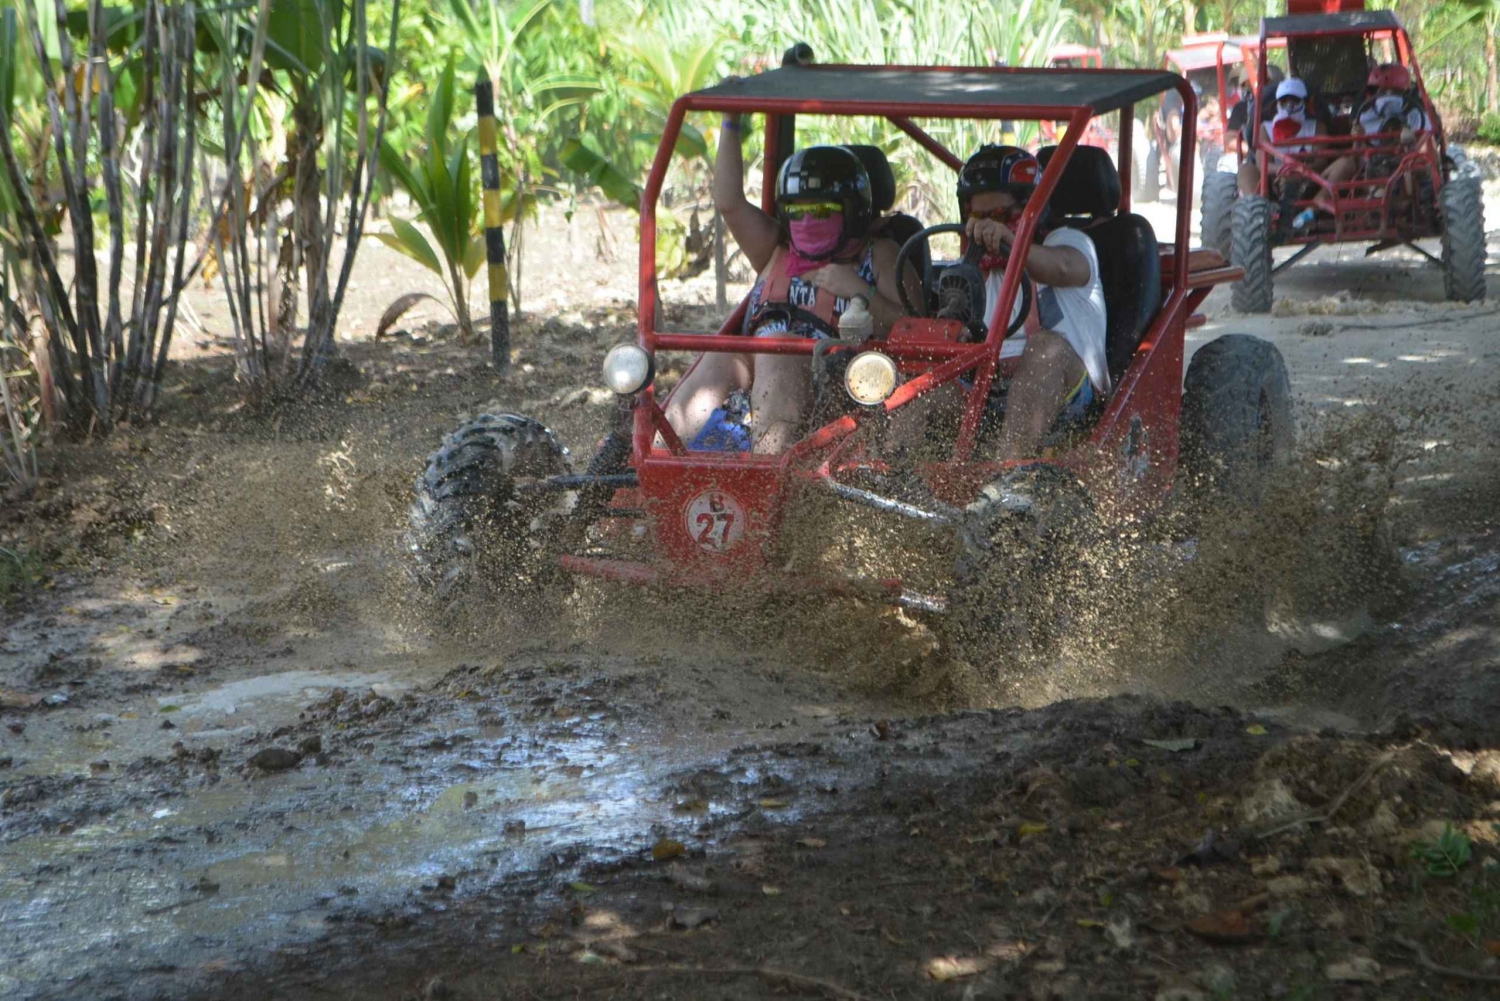 Muddy ATV Eco-Adventure from Punta Cana